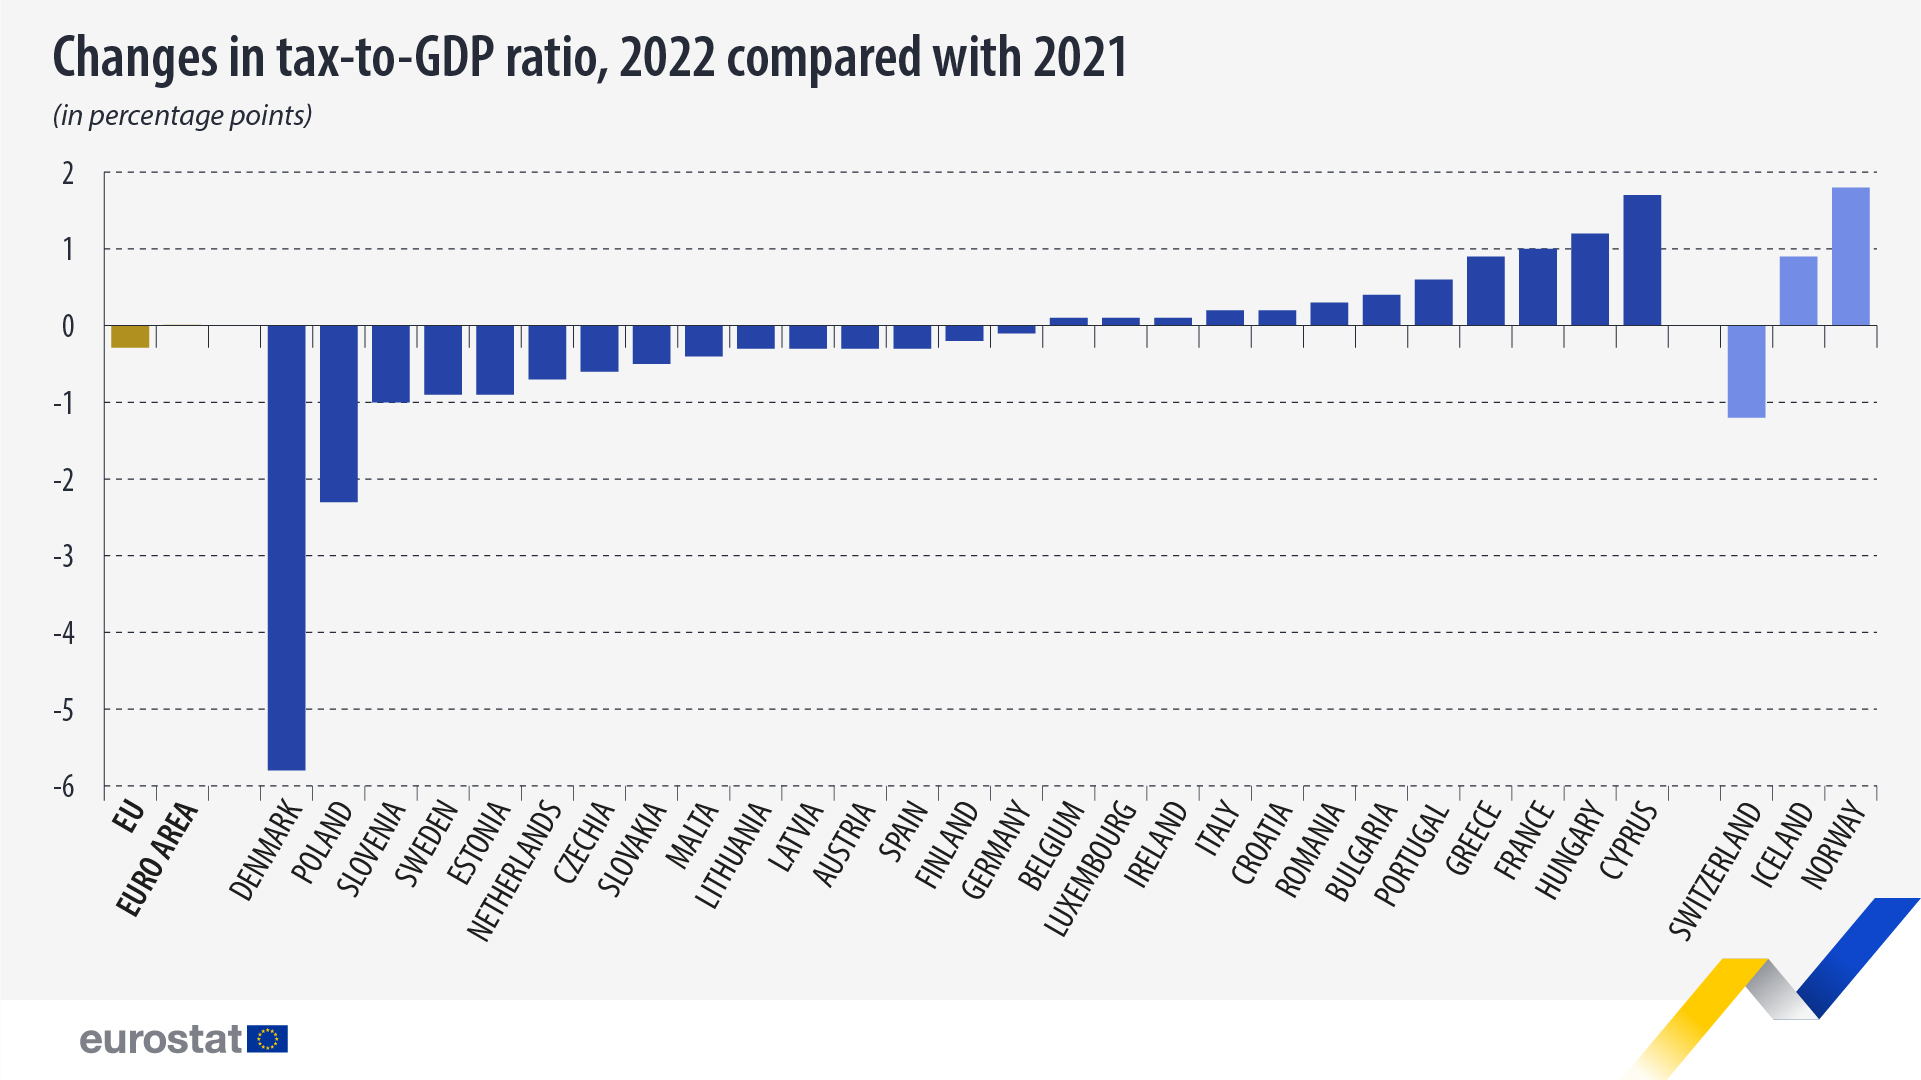 գծապատկեր. Հարկեր-ՀՆԱ հարաբերակցության փոփոխություններ, 2022թ.՝ 2021թ.-ի համեմատ (տոկոսային կետով)